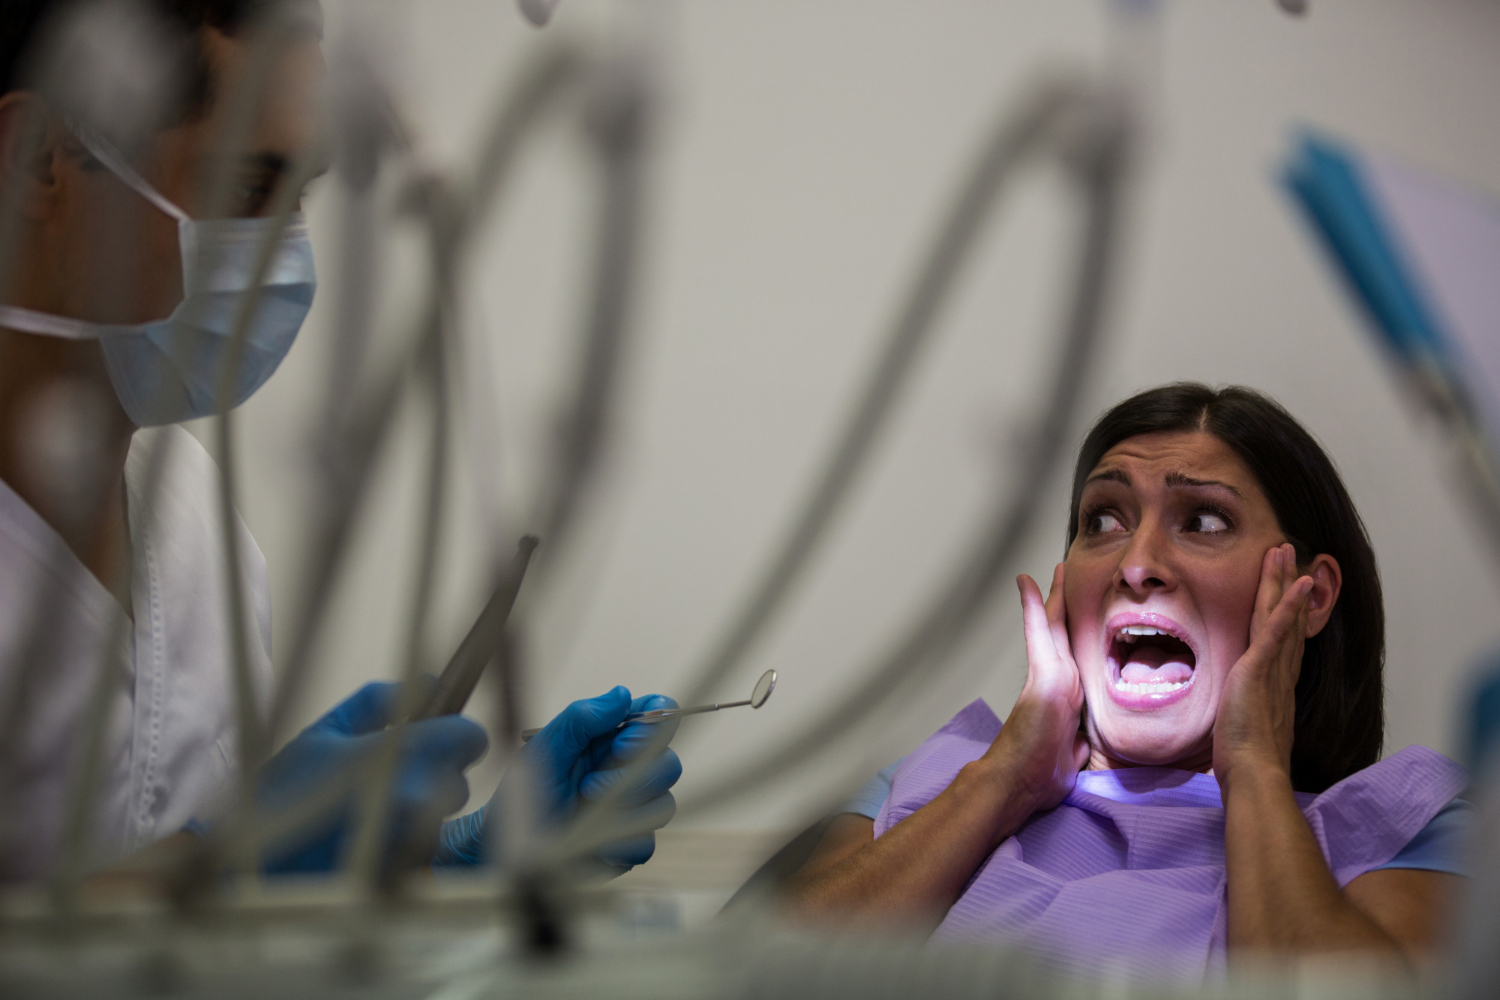 1500px x 1000px - Angst vor Zahnarzt wegen schlechter und fehlender ZÃ¤hne - Ã–sterreichs  ZahnÃ¤rzte gehen neue Wege fÃ¼r Angstpatienten - implantat.or.at